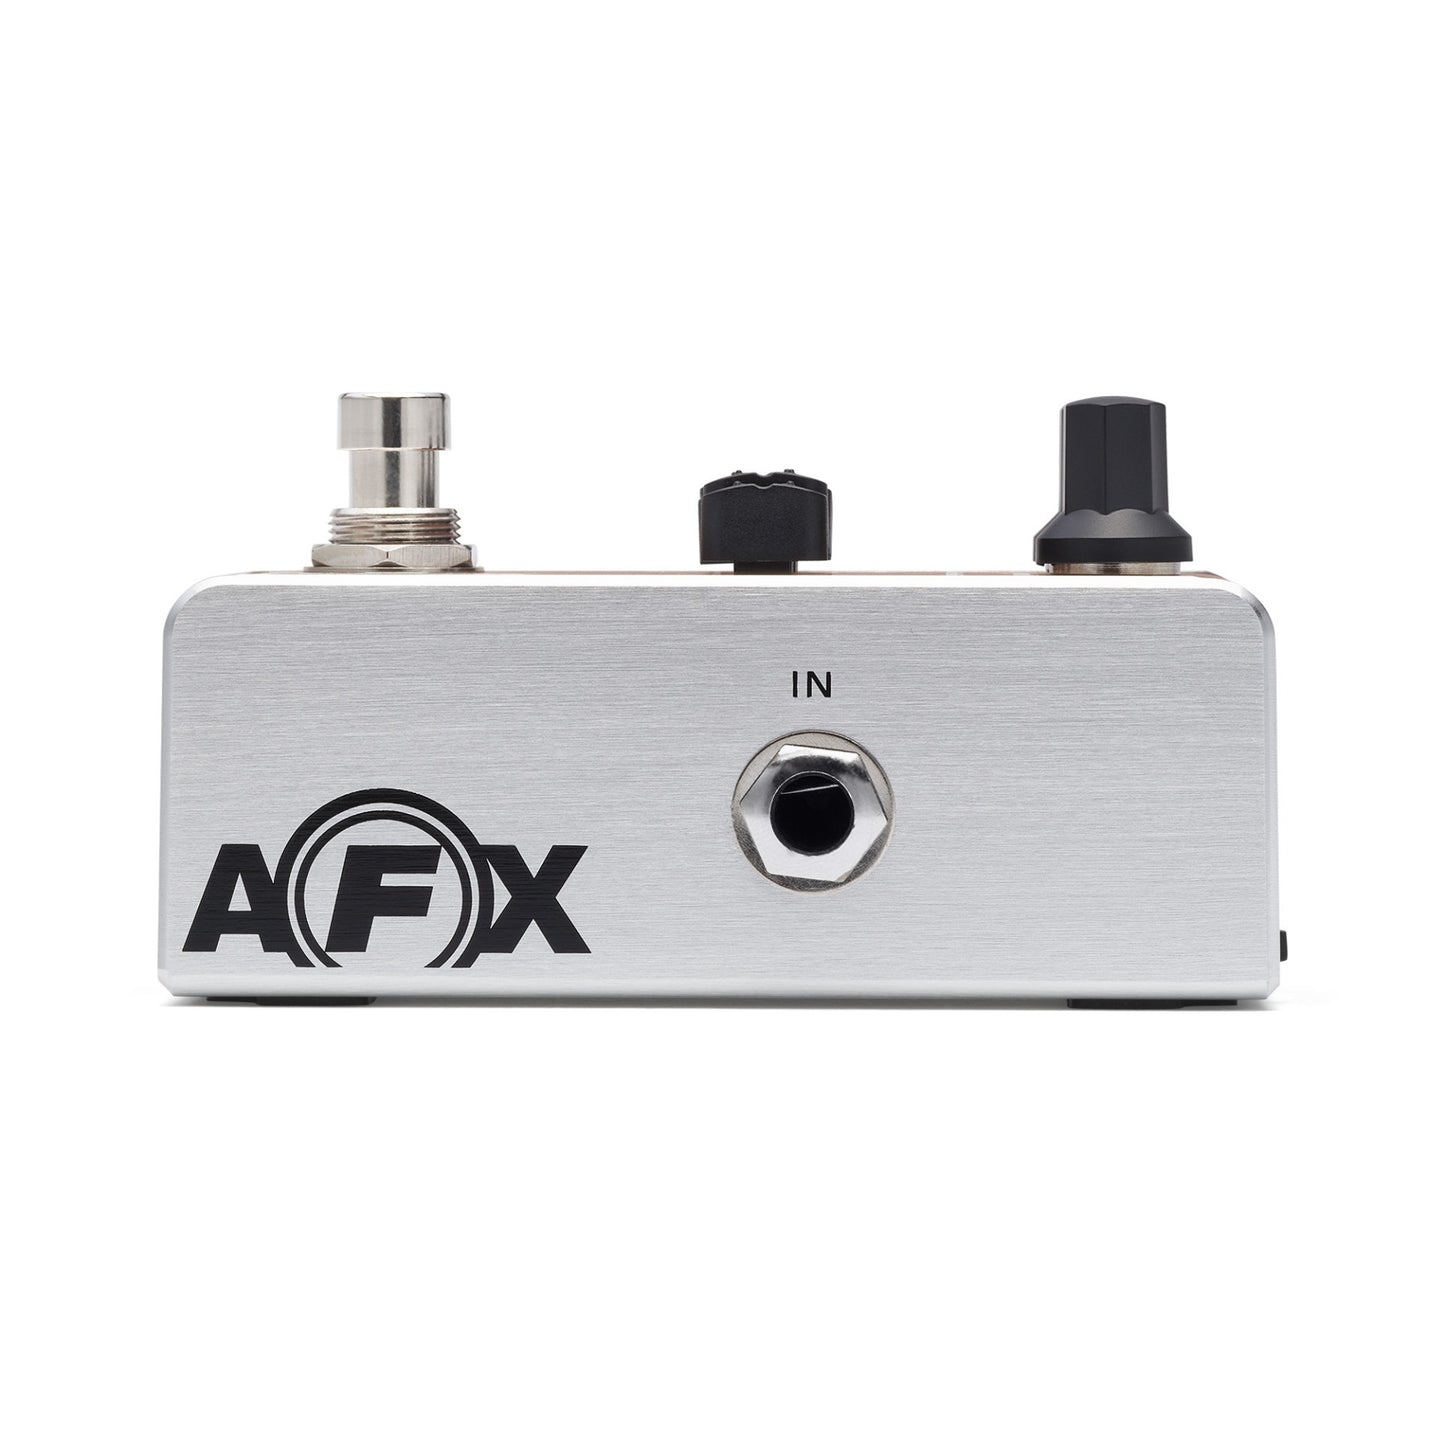 Fishman AFX Pro EQ Mini Acoustic Preamp & EQ